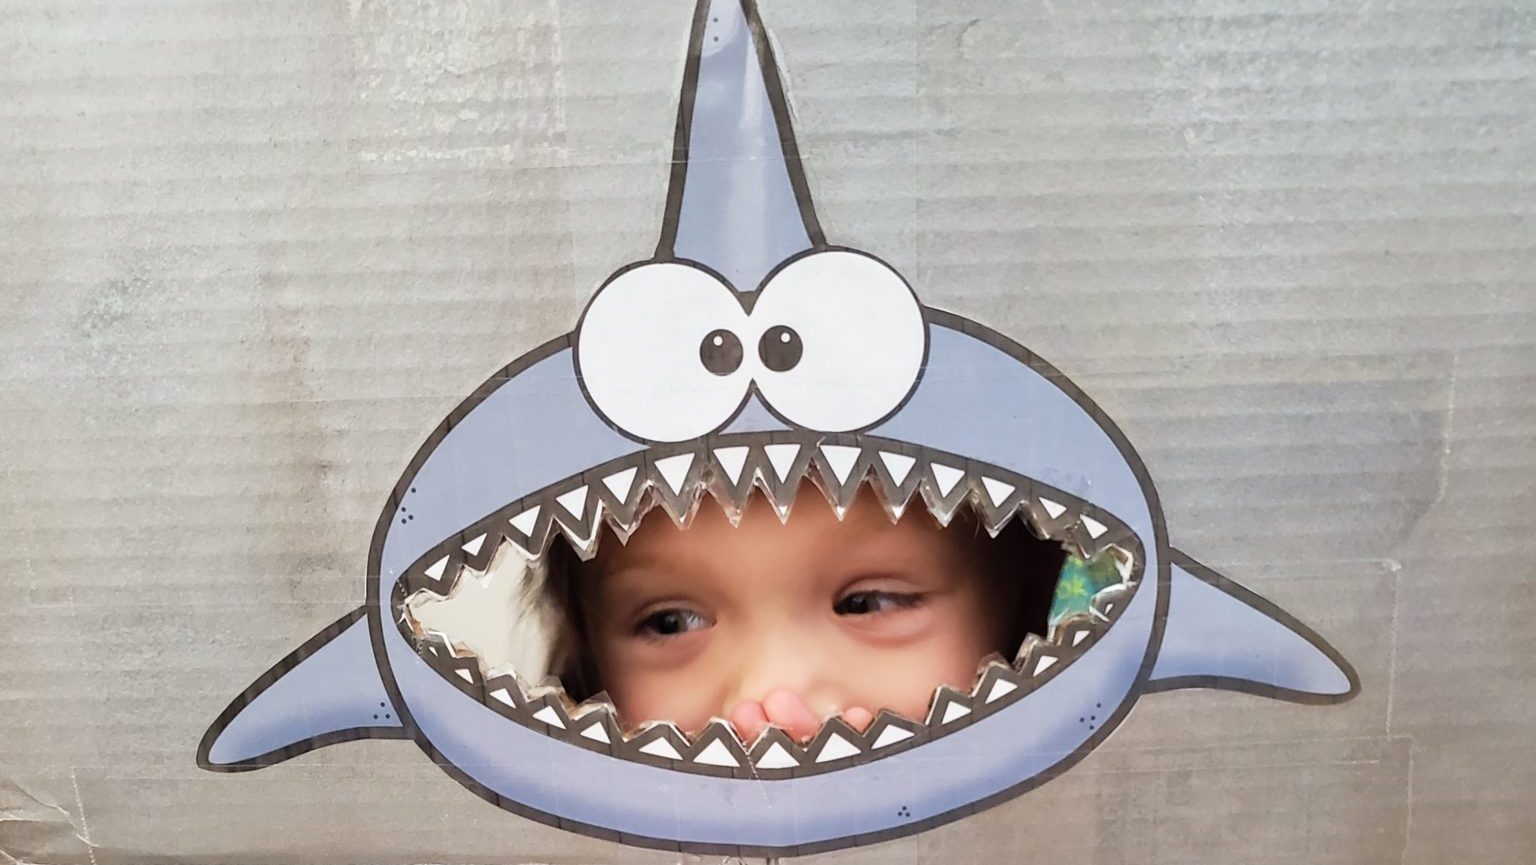 Nemo Shark Free Games, Activities, Puzzles, Online for kids, Preschool, Kindergarten